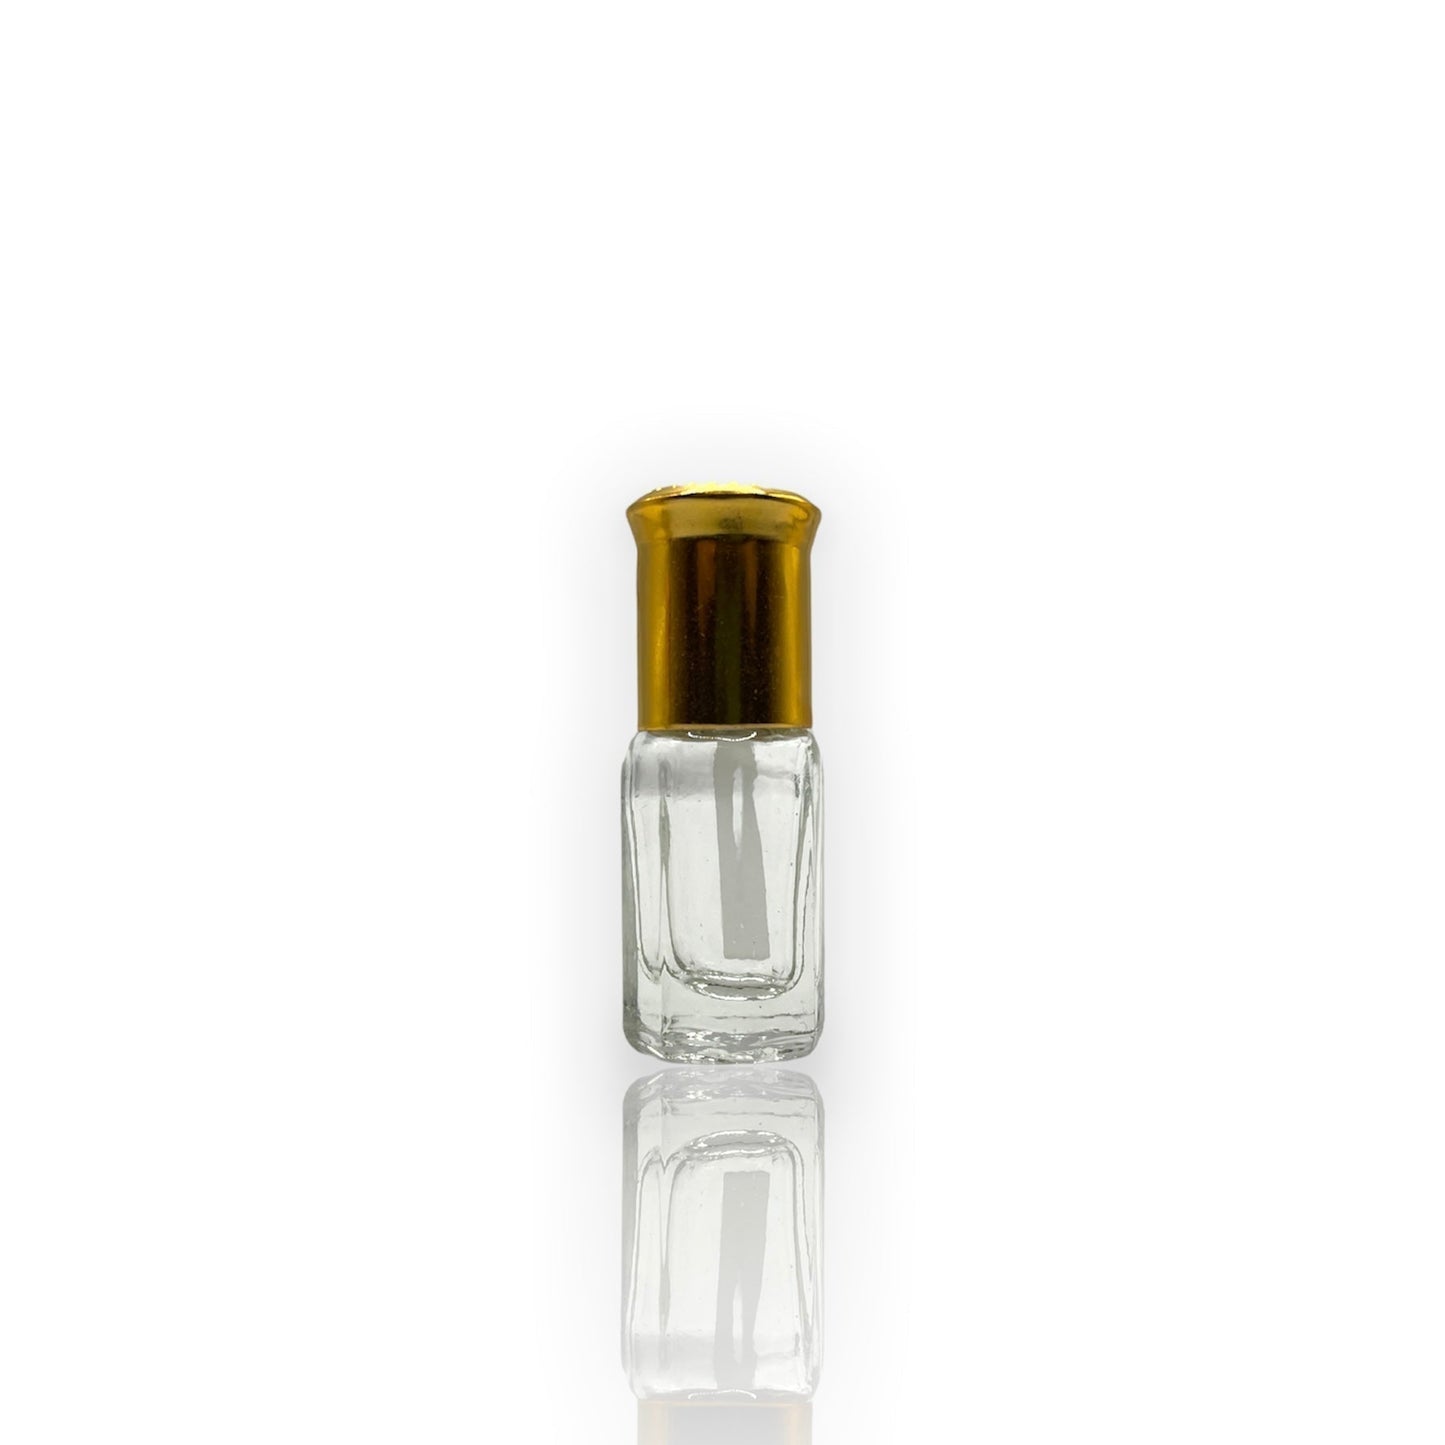 F-08 Öl Parfüm *Inspiriert Miss Dior Chierie